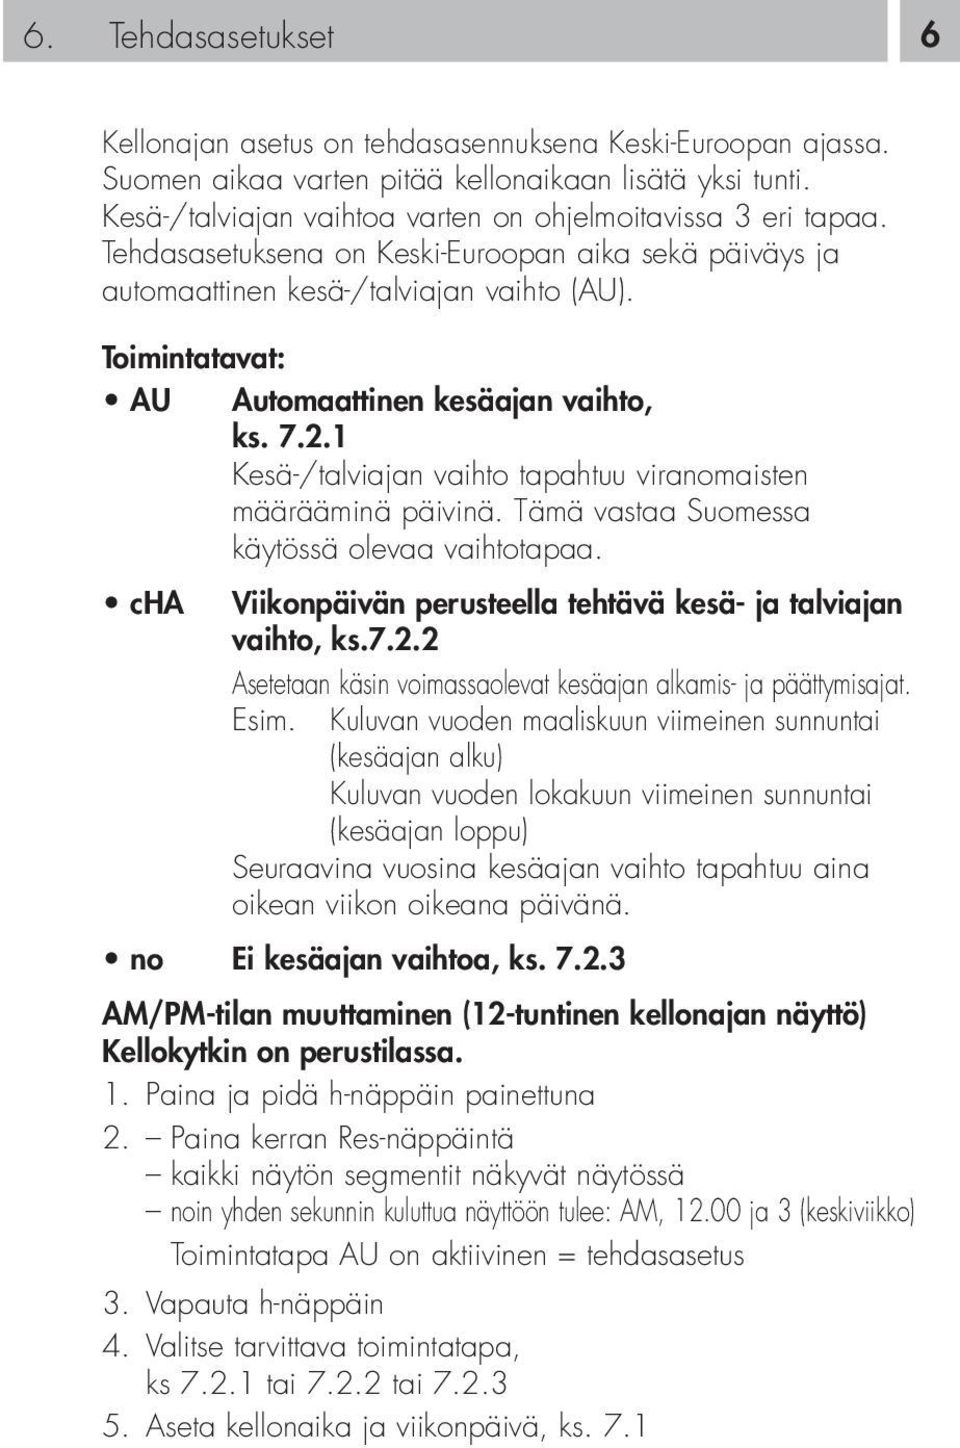 Toimintatavat: AU Automaattinen kesäajan vaihto, ks. 7.2.1 Kesä-/talviajan vaihto tapahtuu viranomaisten määrääminä päivinä. Tämä vastaa Suomessa käytössä olevaa vaihtotapaa.